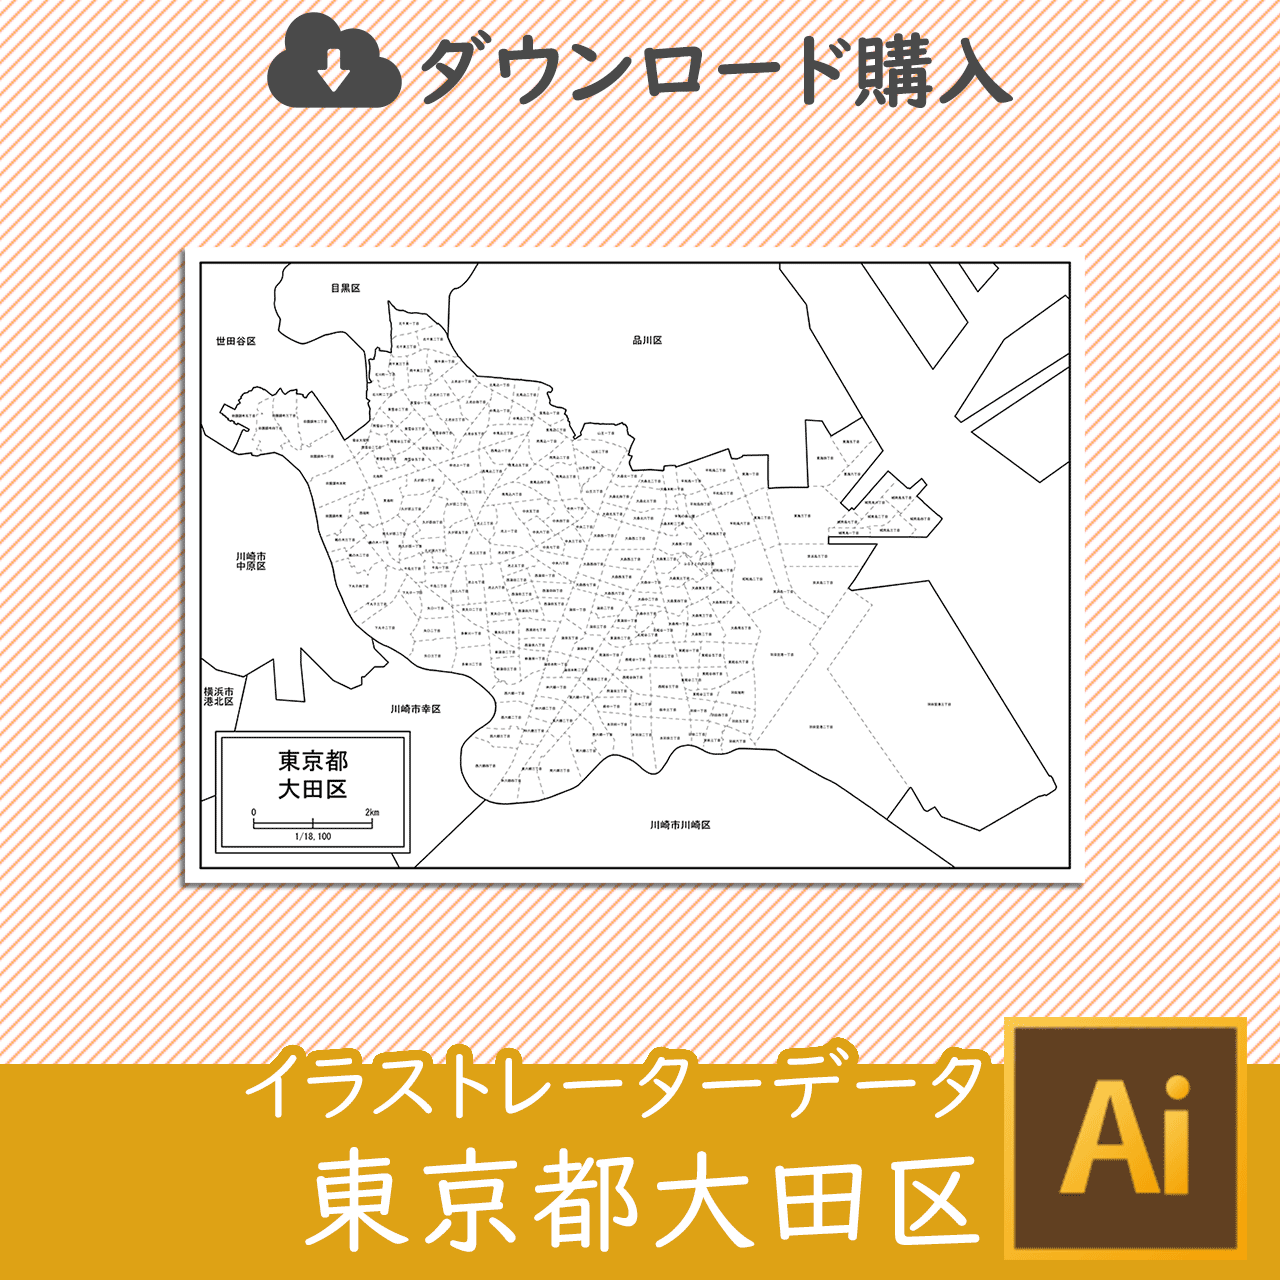 大田区の白地図のサムネイル画像